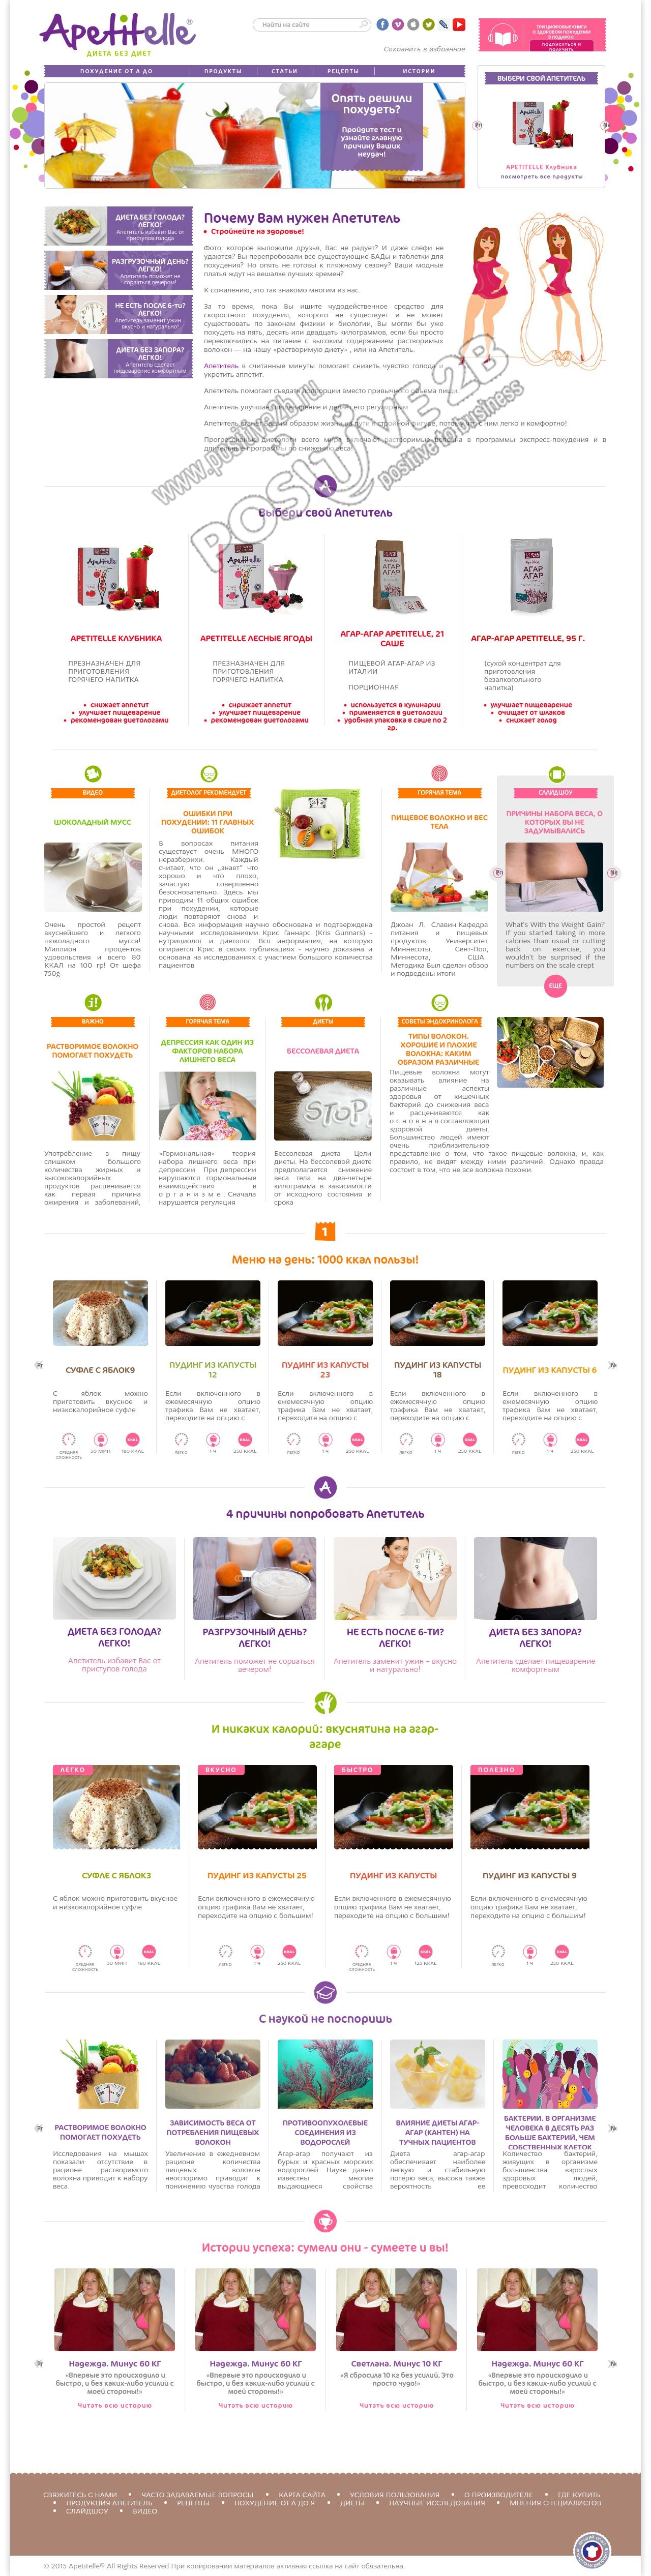 Сайт продуктов для похудения